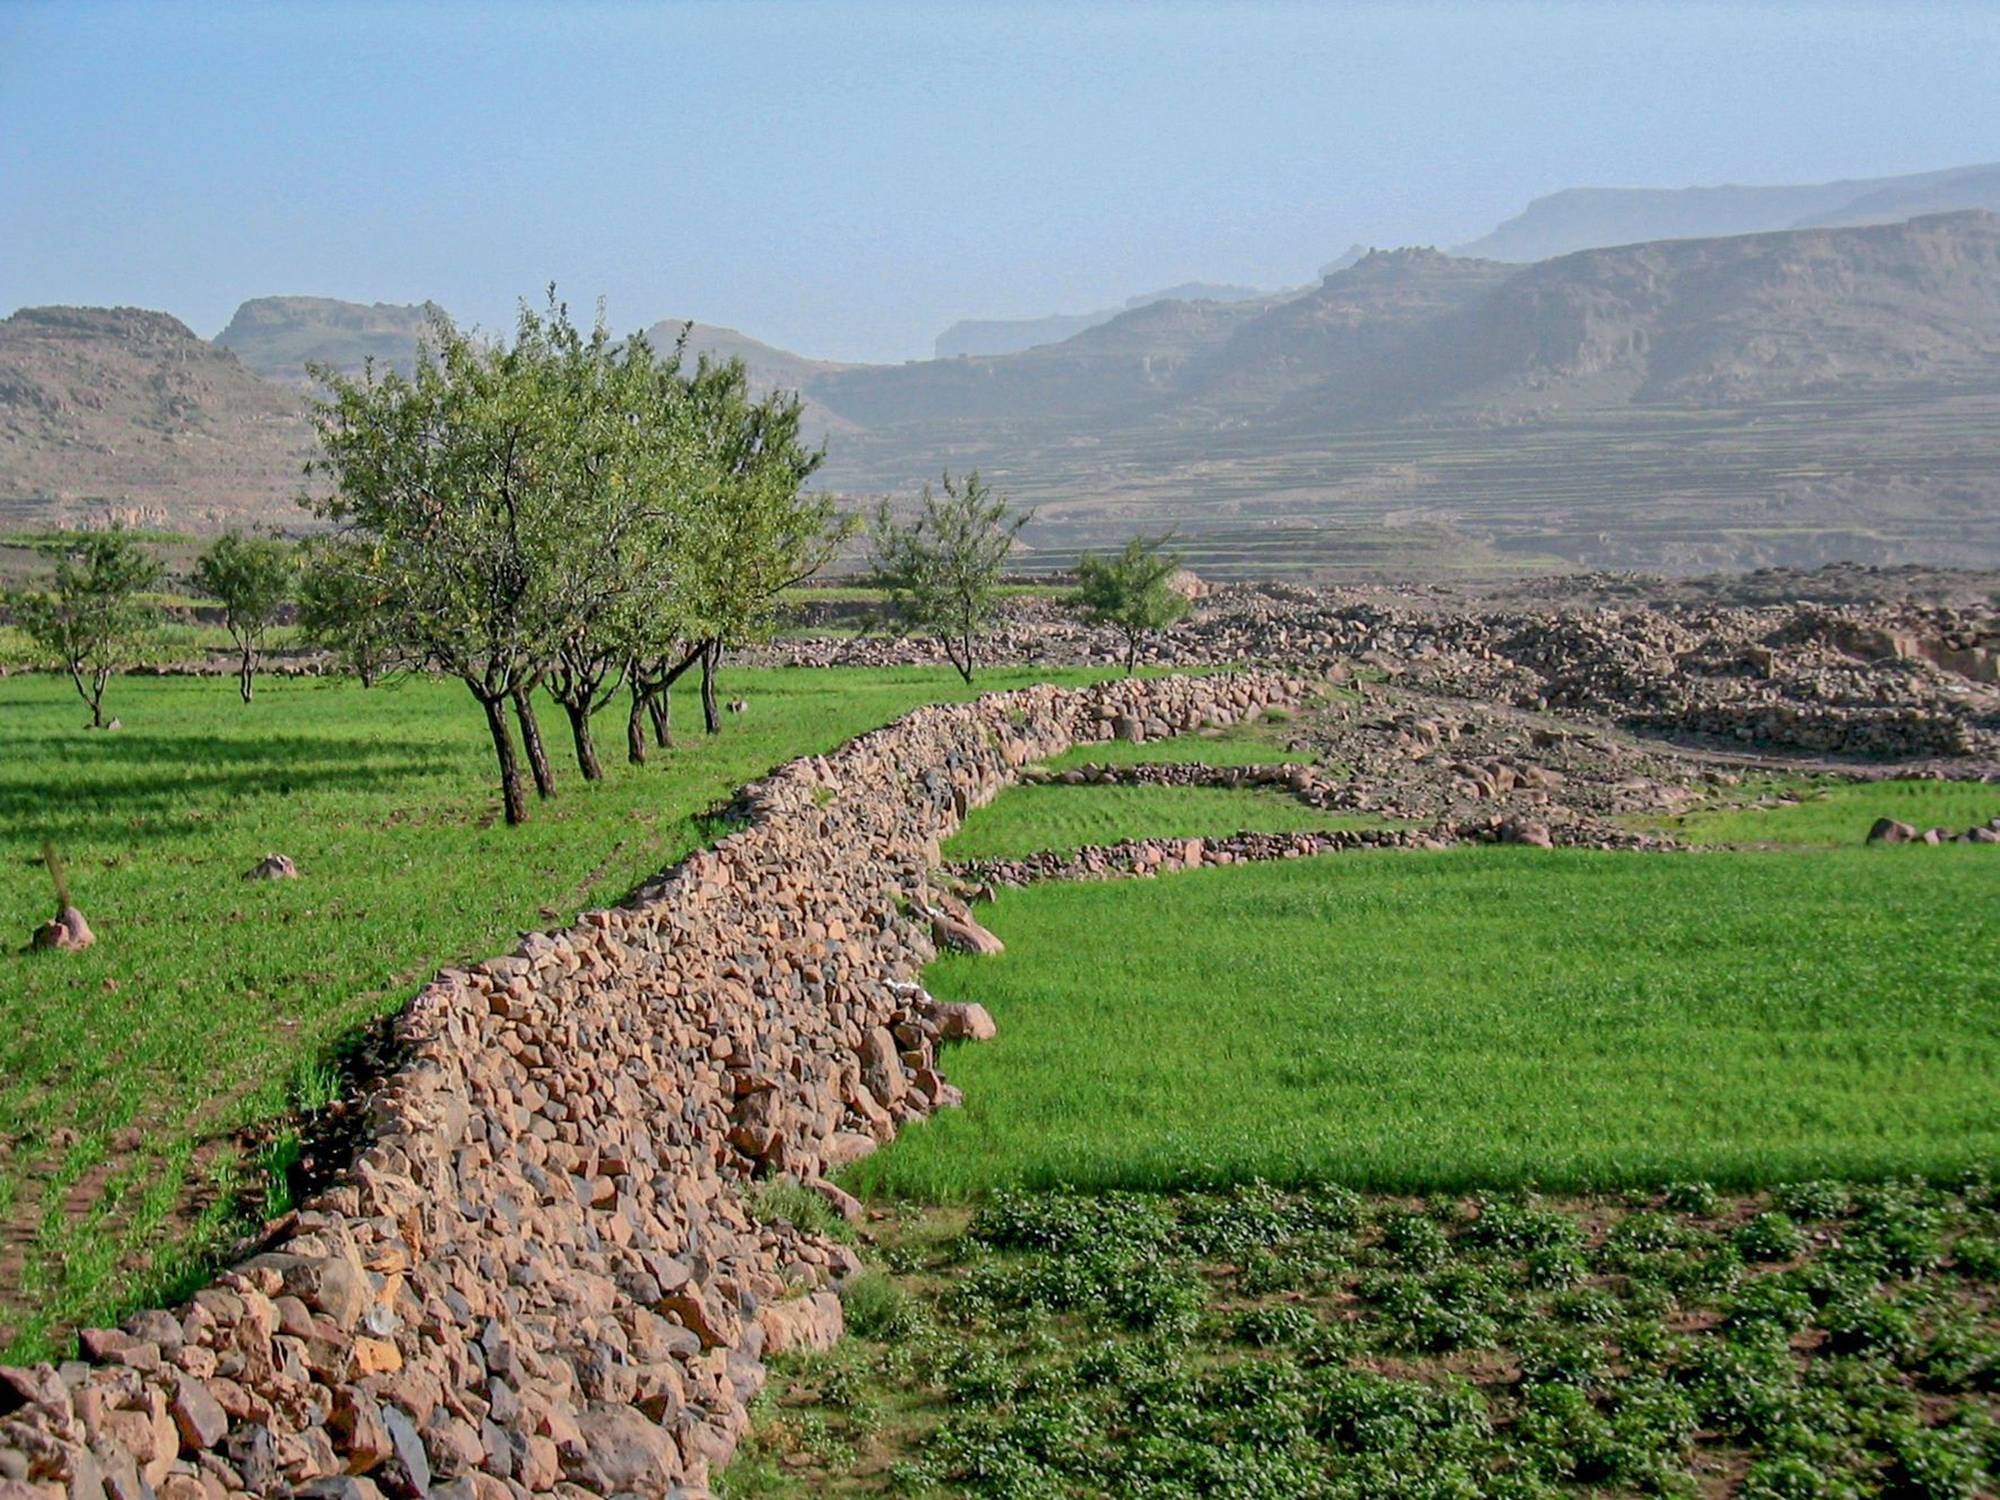 Hautes terres à l’ouest de Sanaa. Jérémie Schiettecatte (CNRS, UMR 8167, Orient & Méditerranée, Paris)